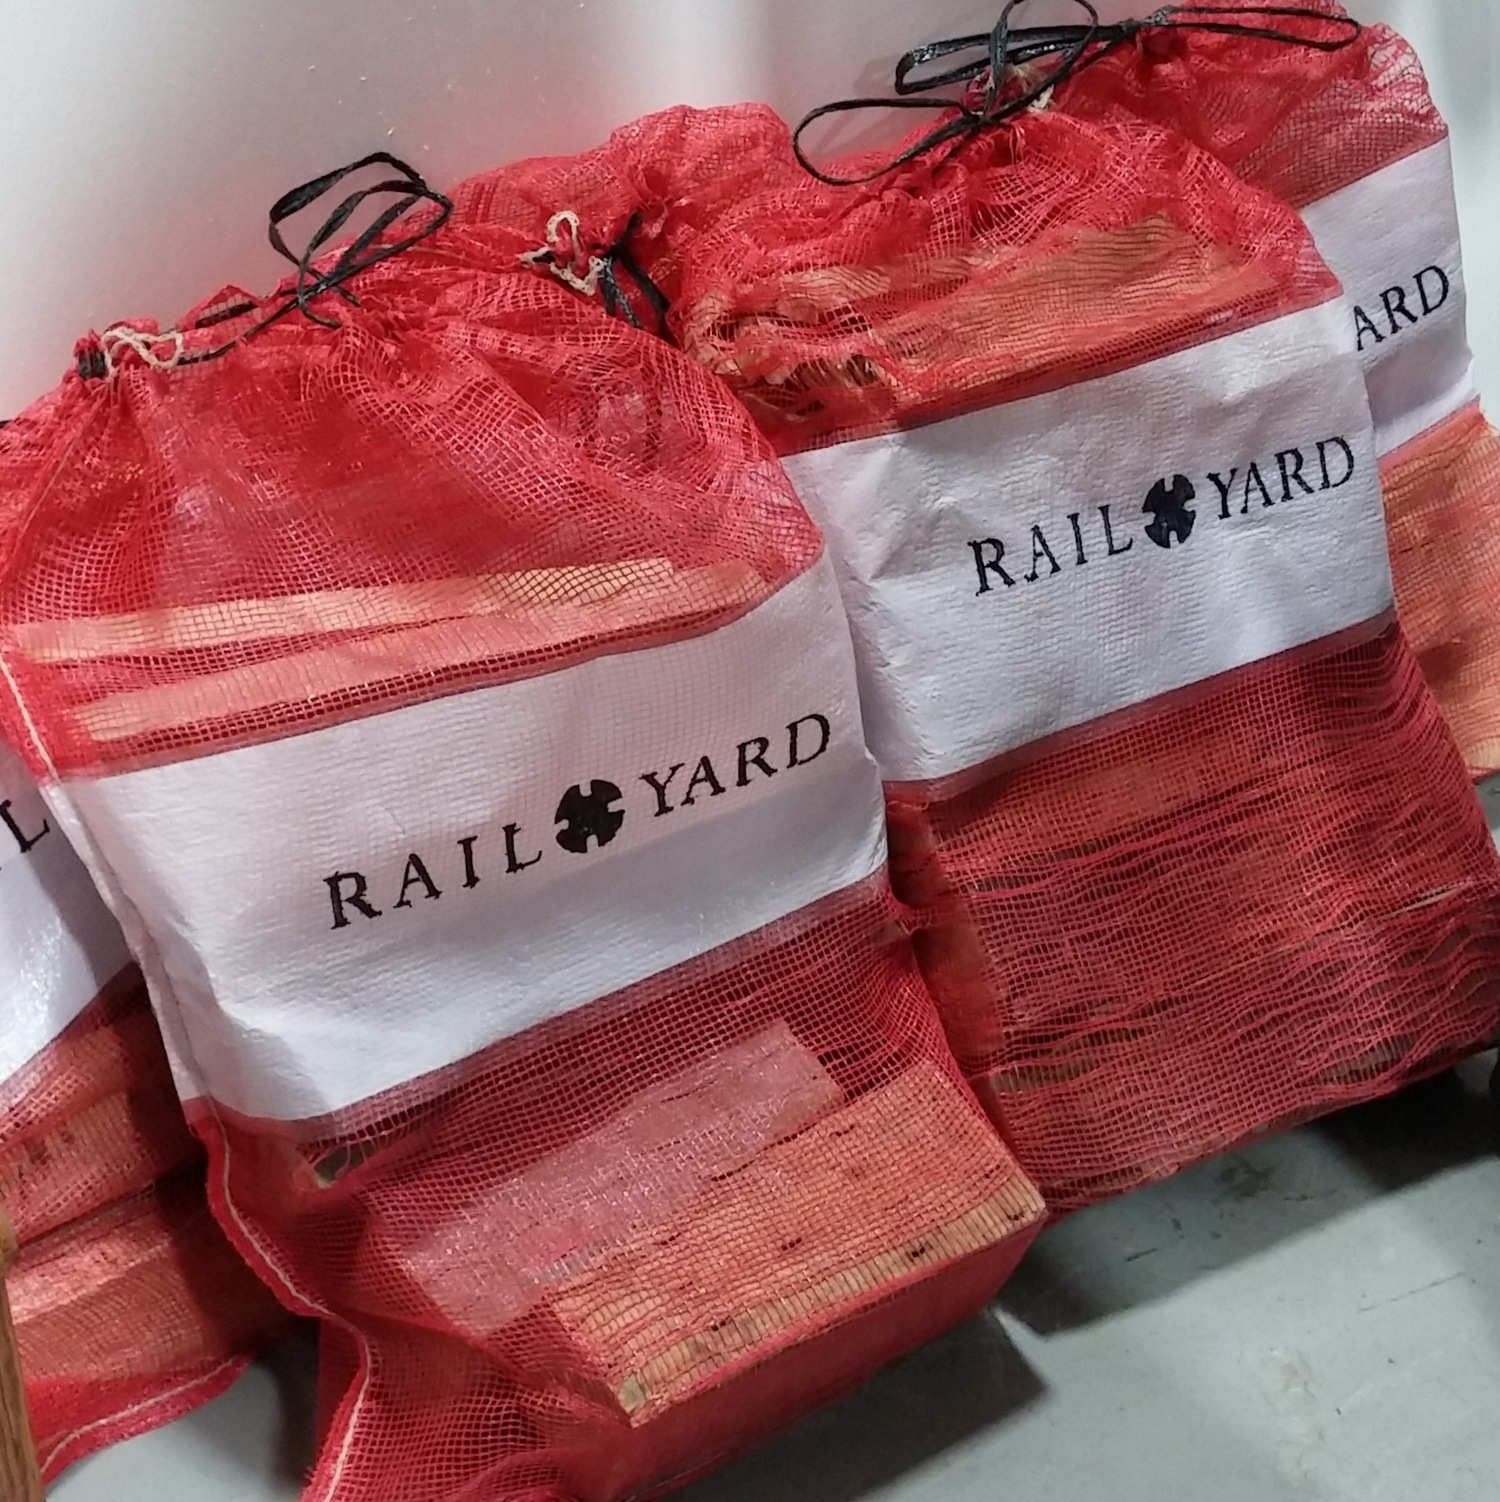 railyard-scraps bags